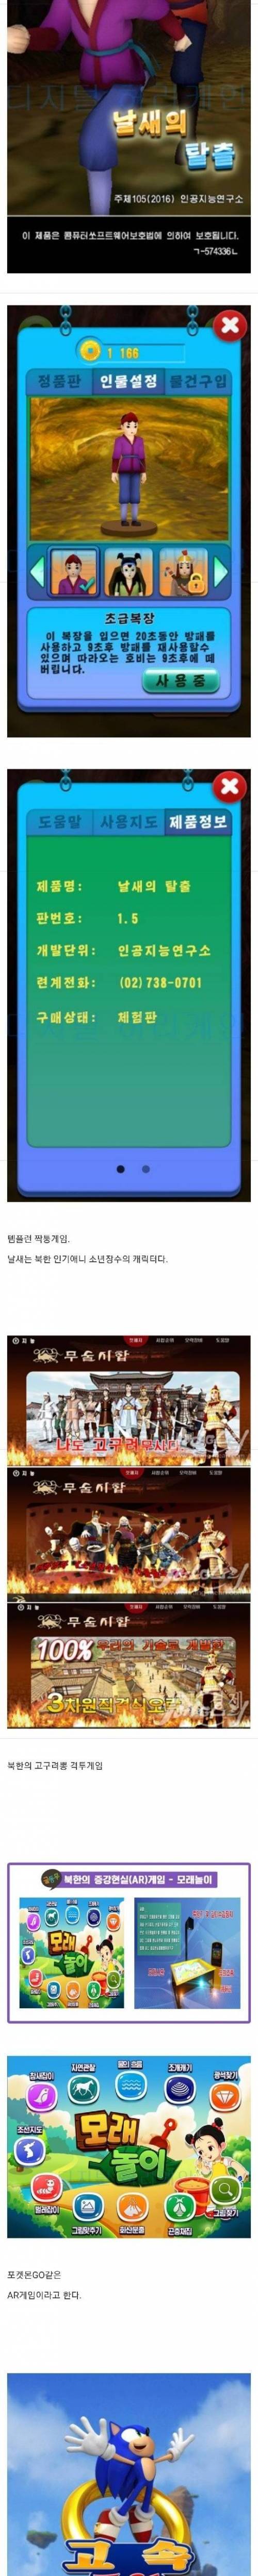 [스압] 북한의 스마트폰 게임